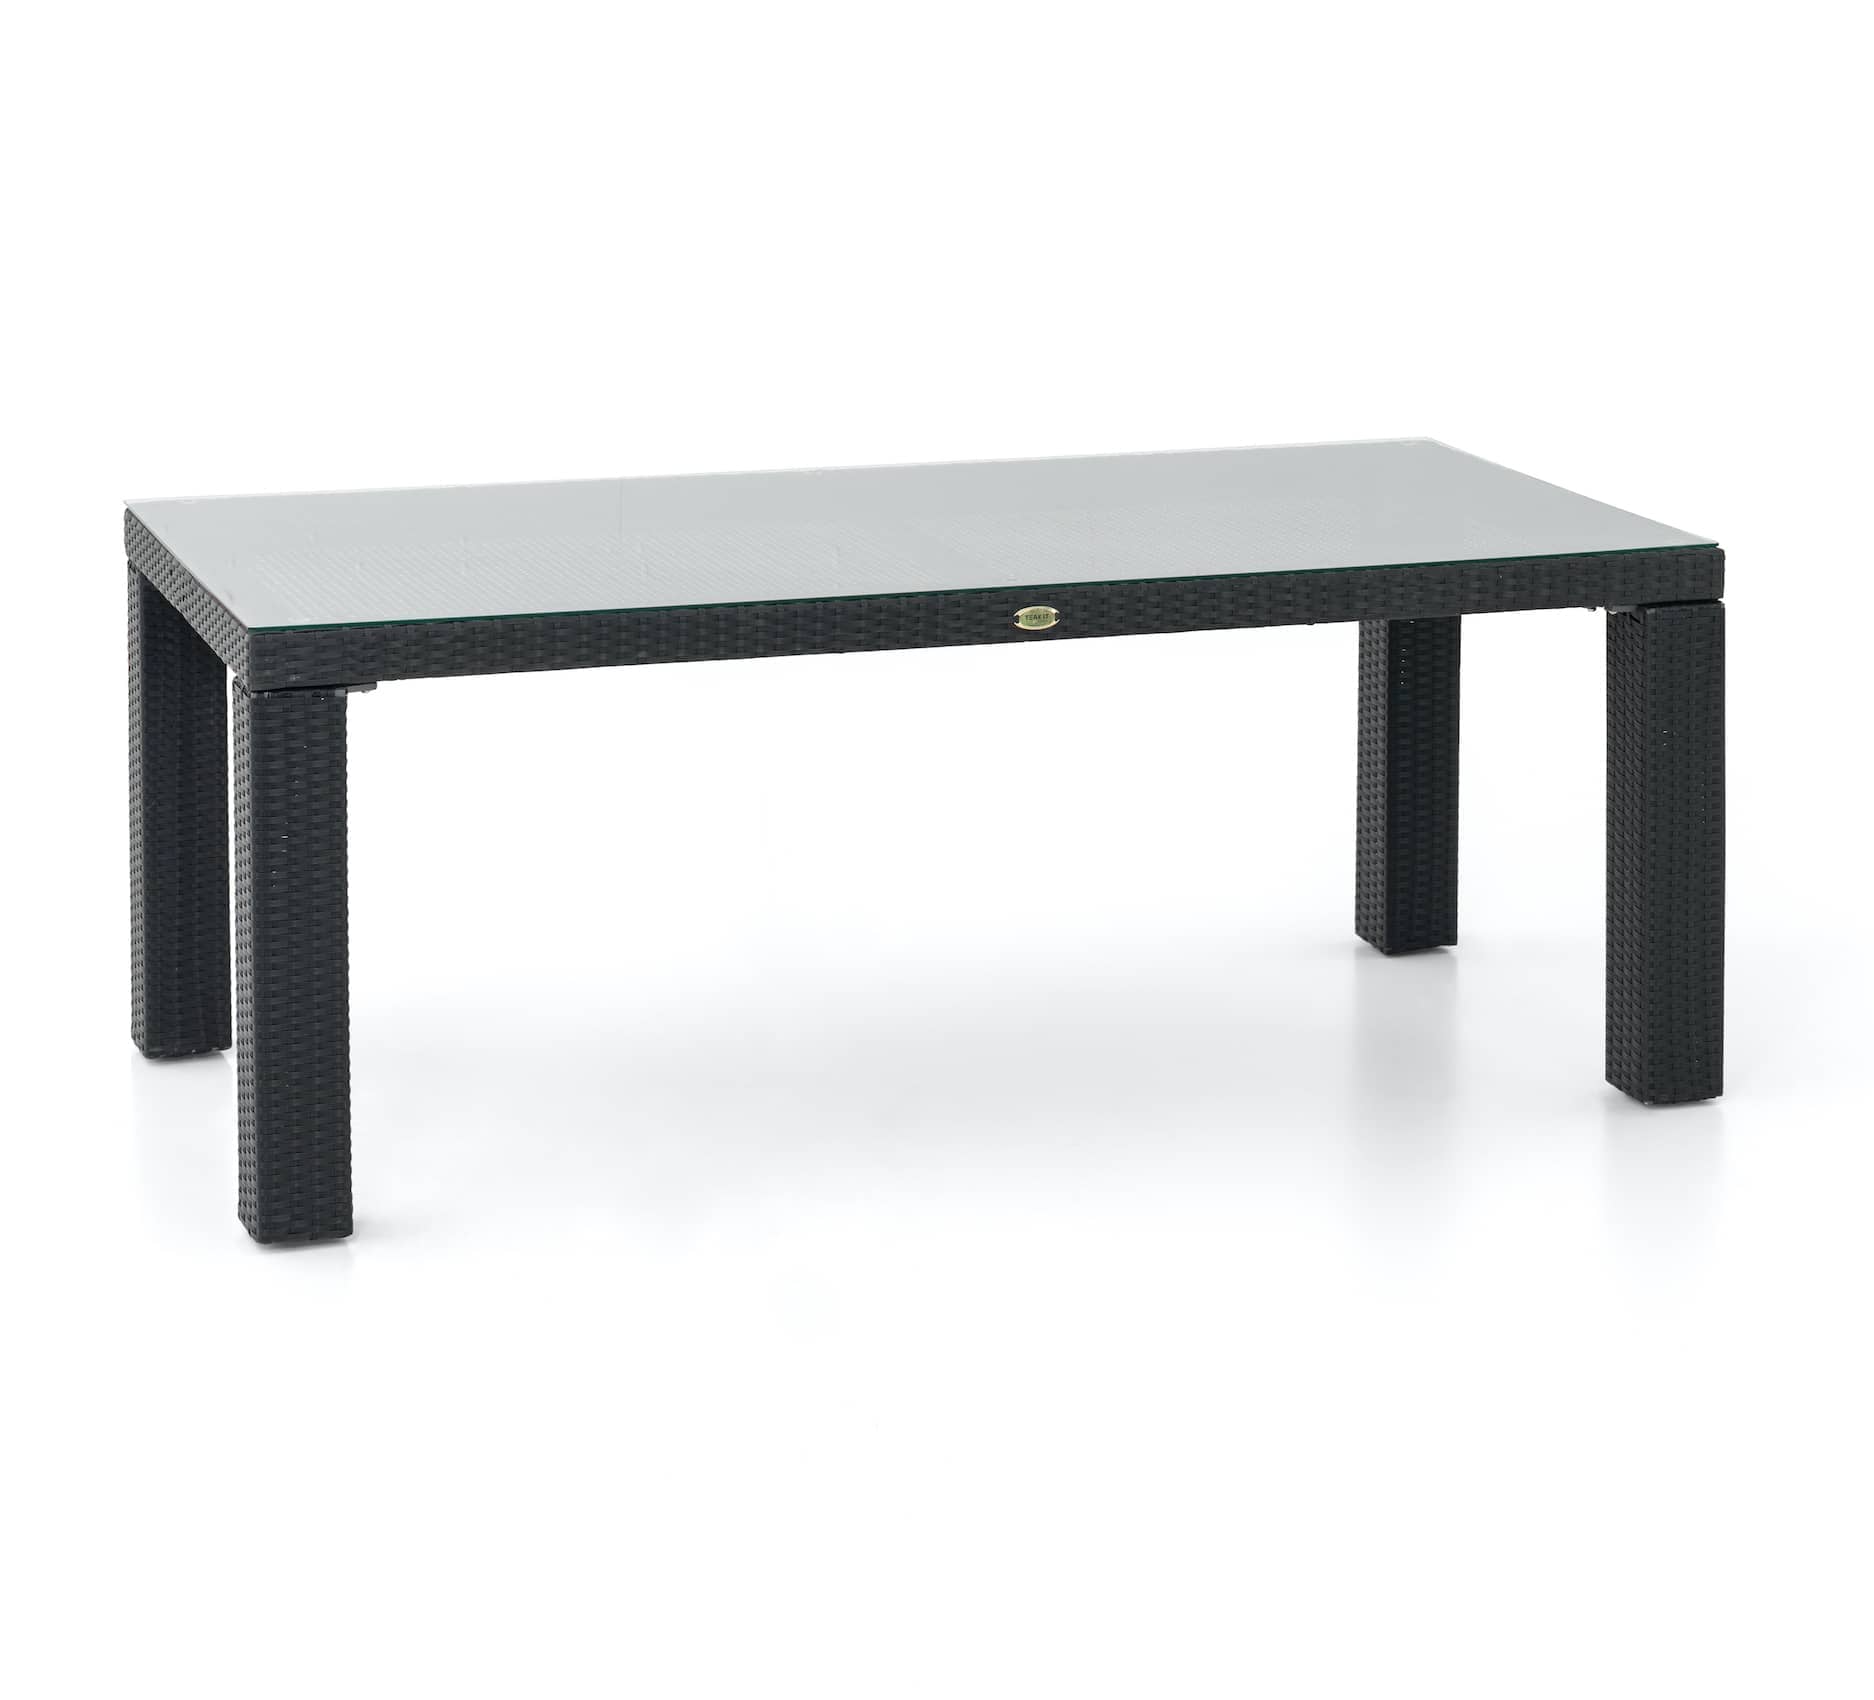 Stôl Darwin XL so sklom